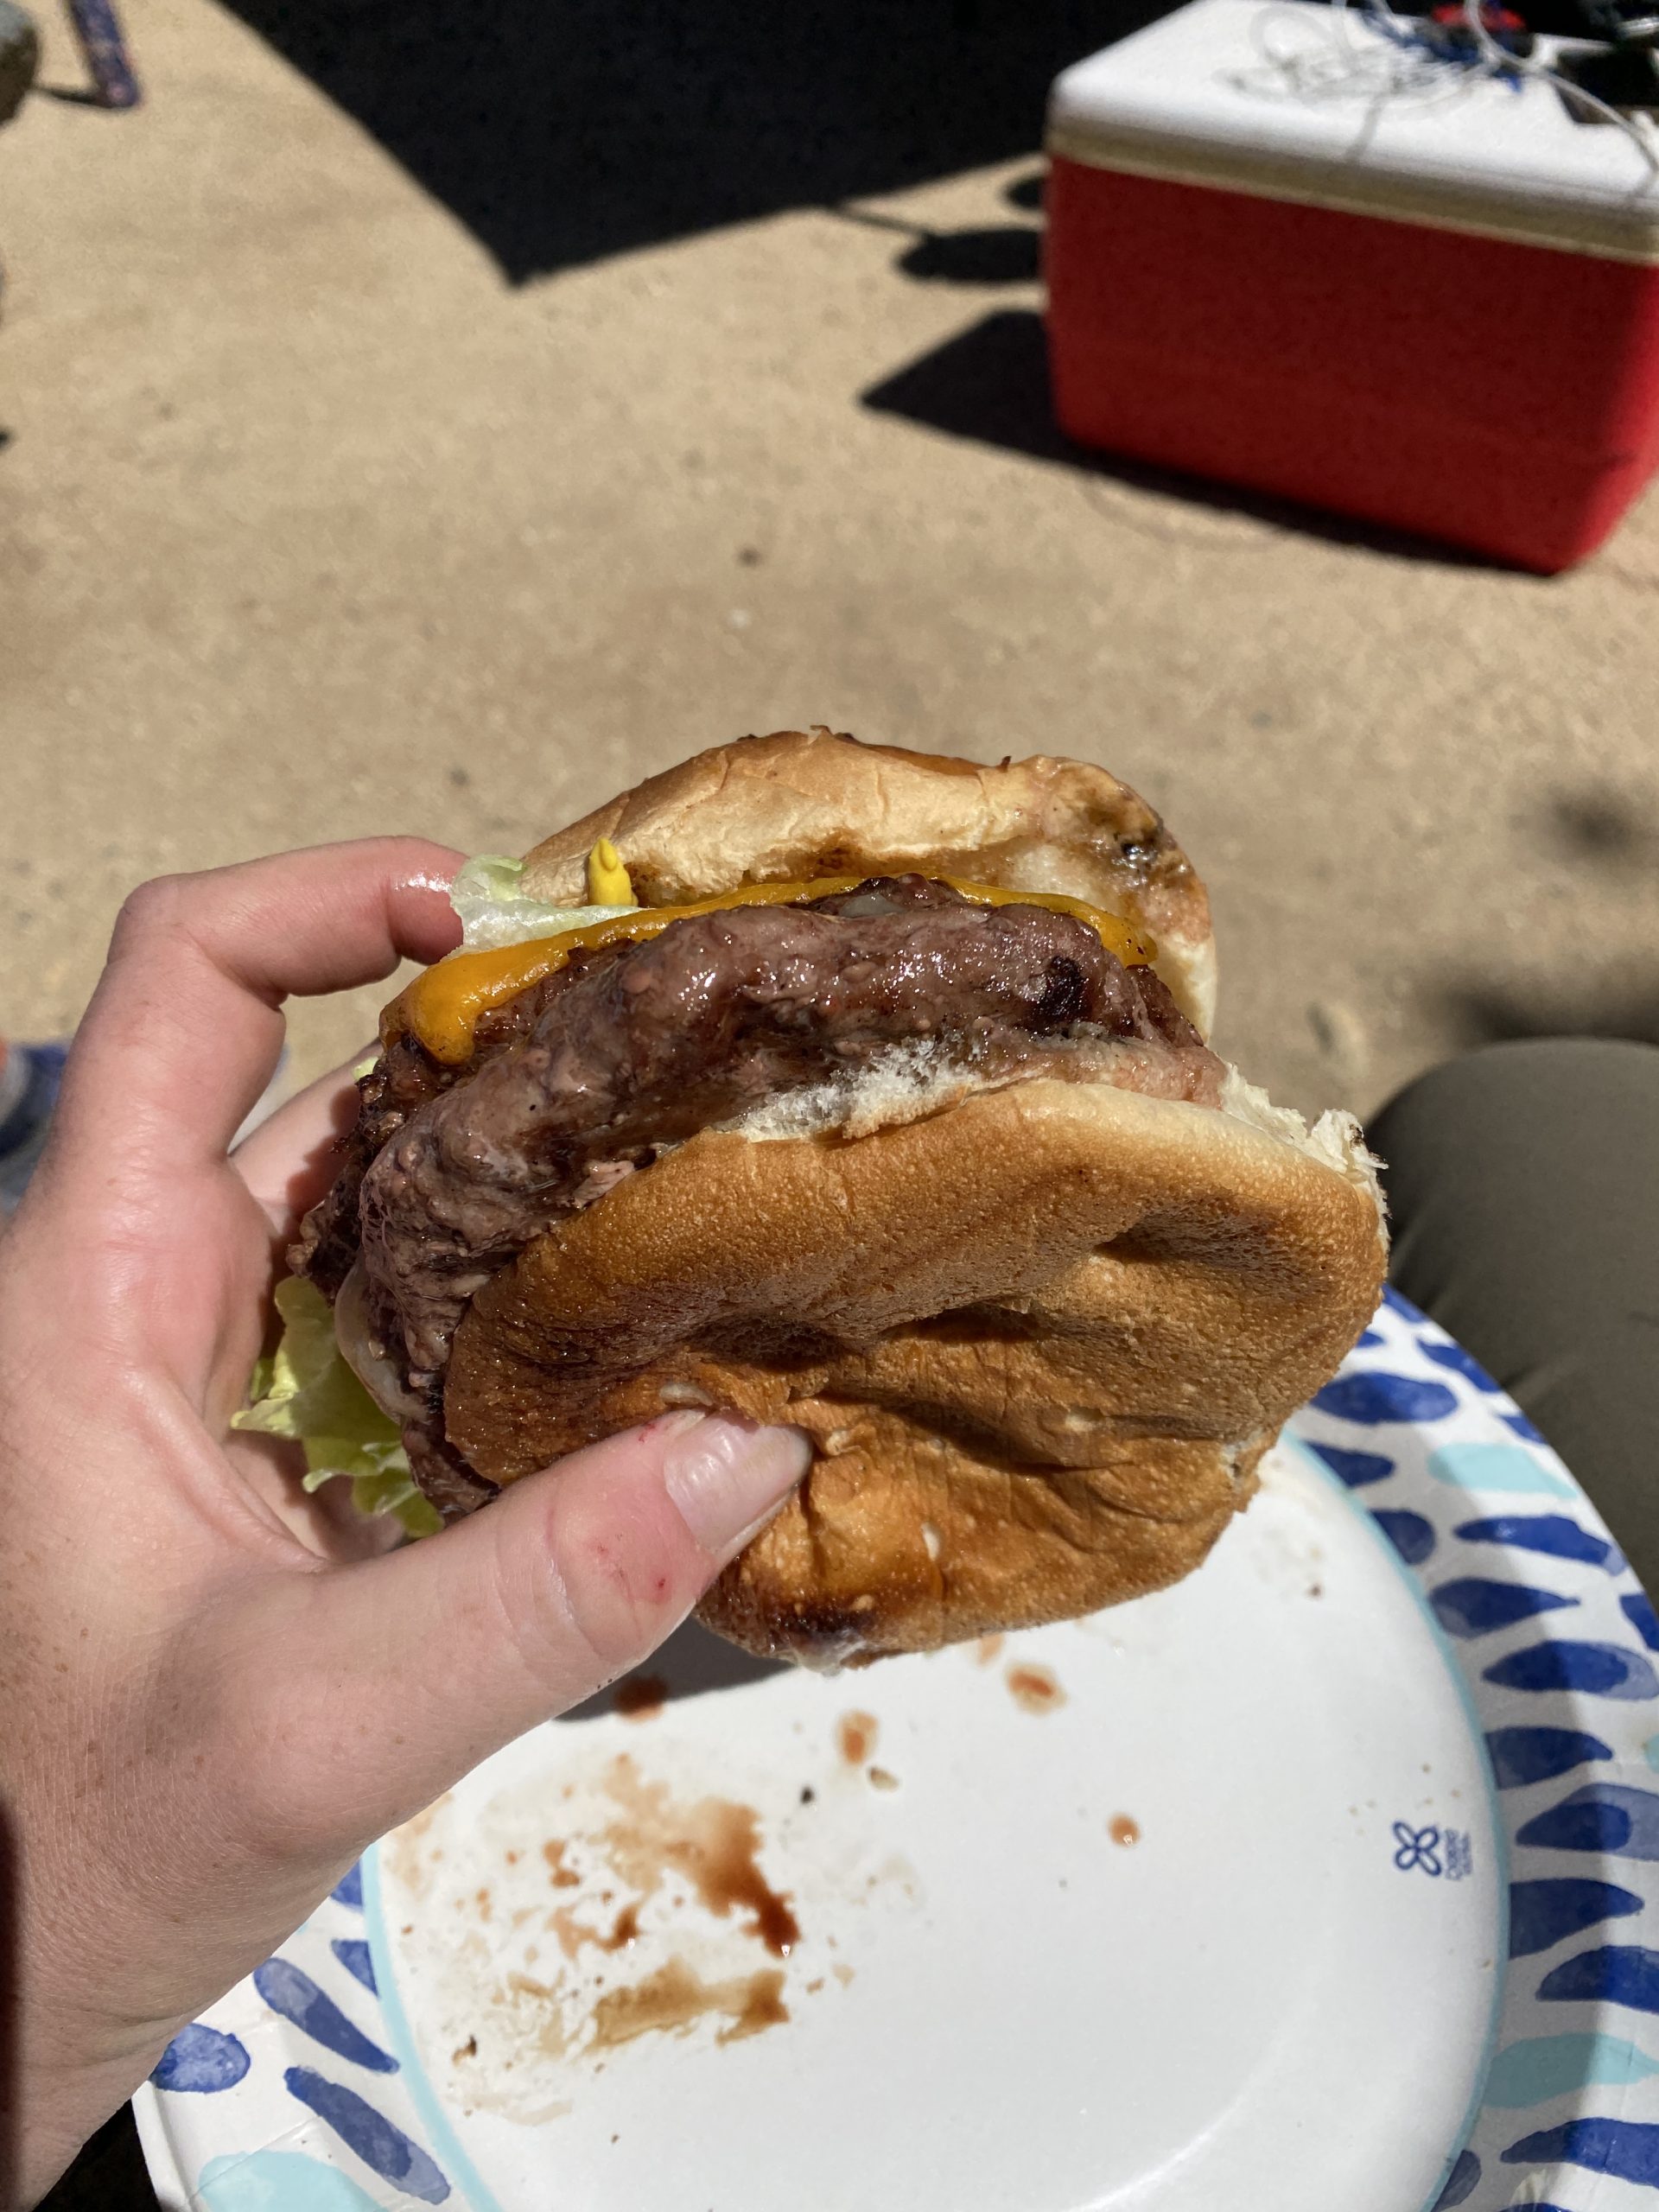 double cheeseburger at trail magic!